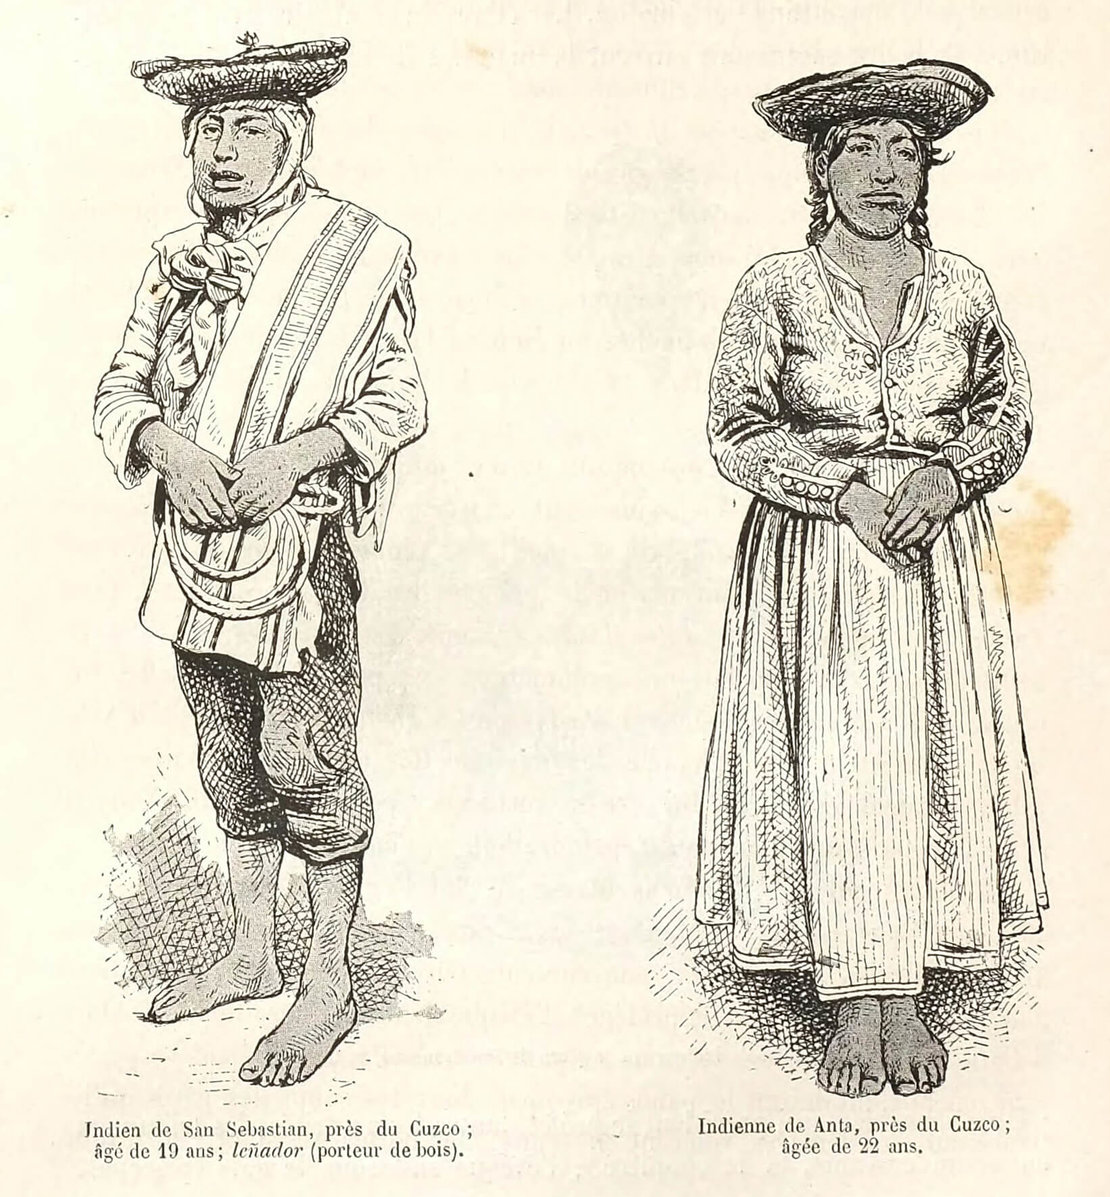 Abbildung aus dem Buch „Péru et Bolivie", Quelle: ÖNB 